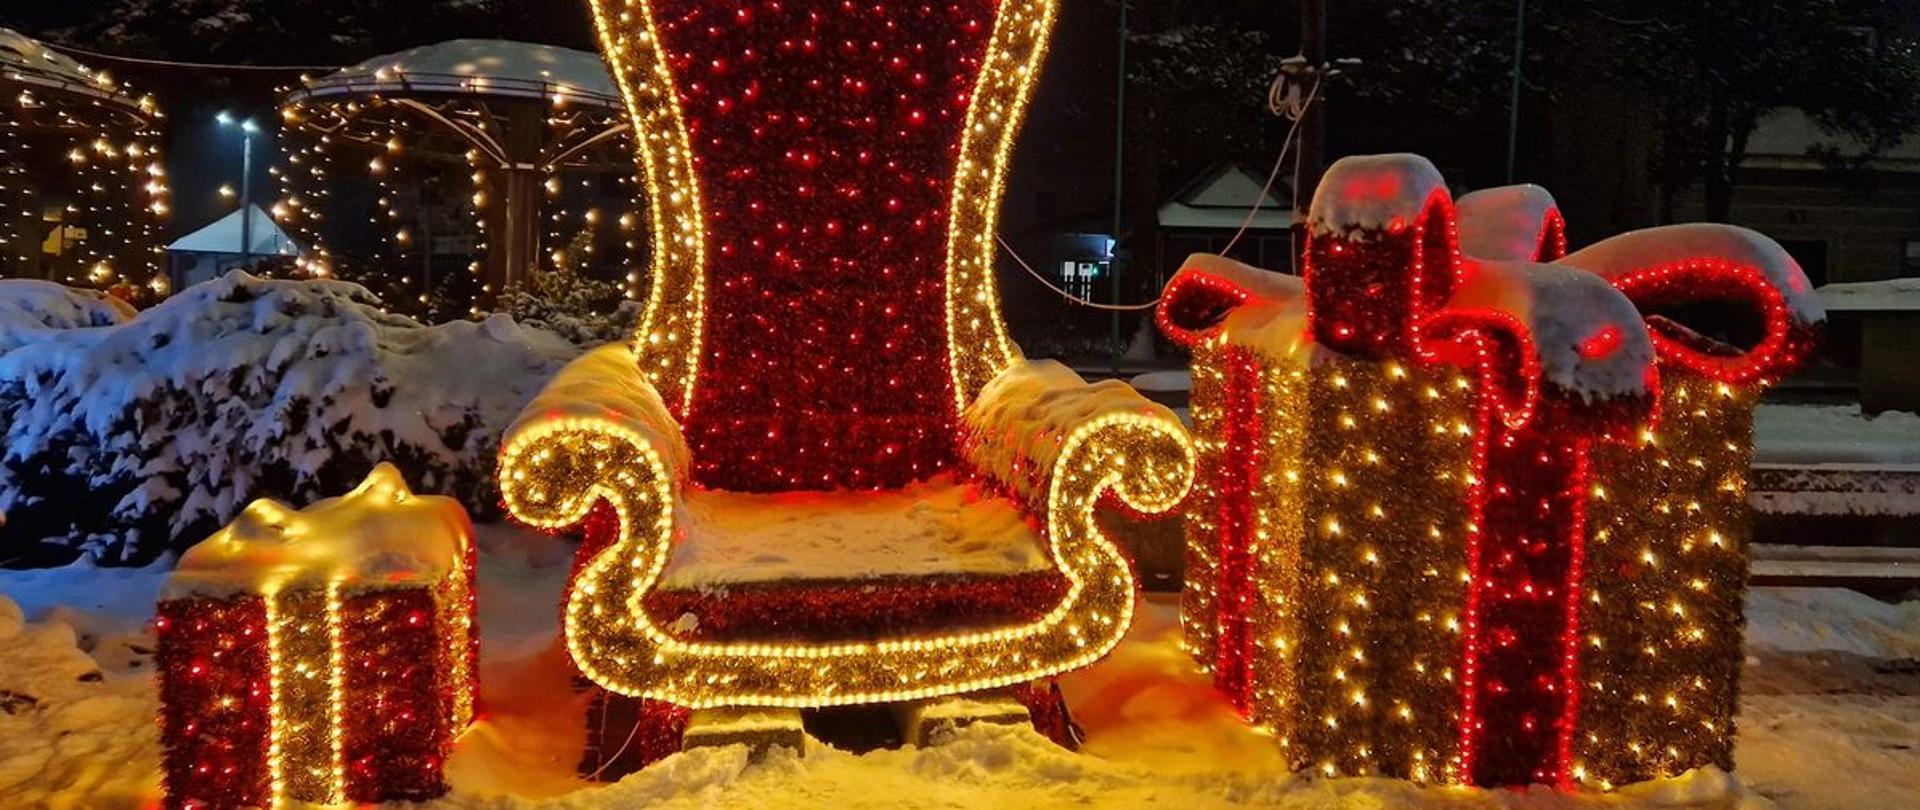 Miejska dekoracja świąteczna w postaci dwóch prezentów i fotela dla Mikołaja, mieniących się po zmroku żółtymi i czerwonymi światełkami.